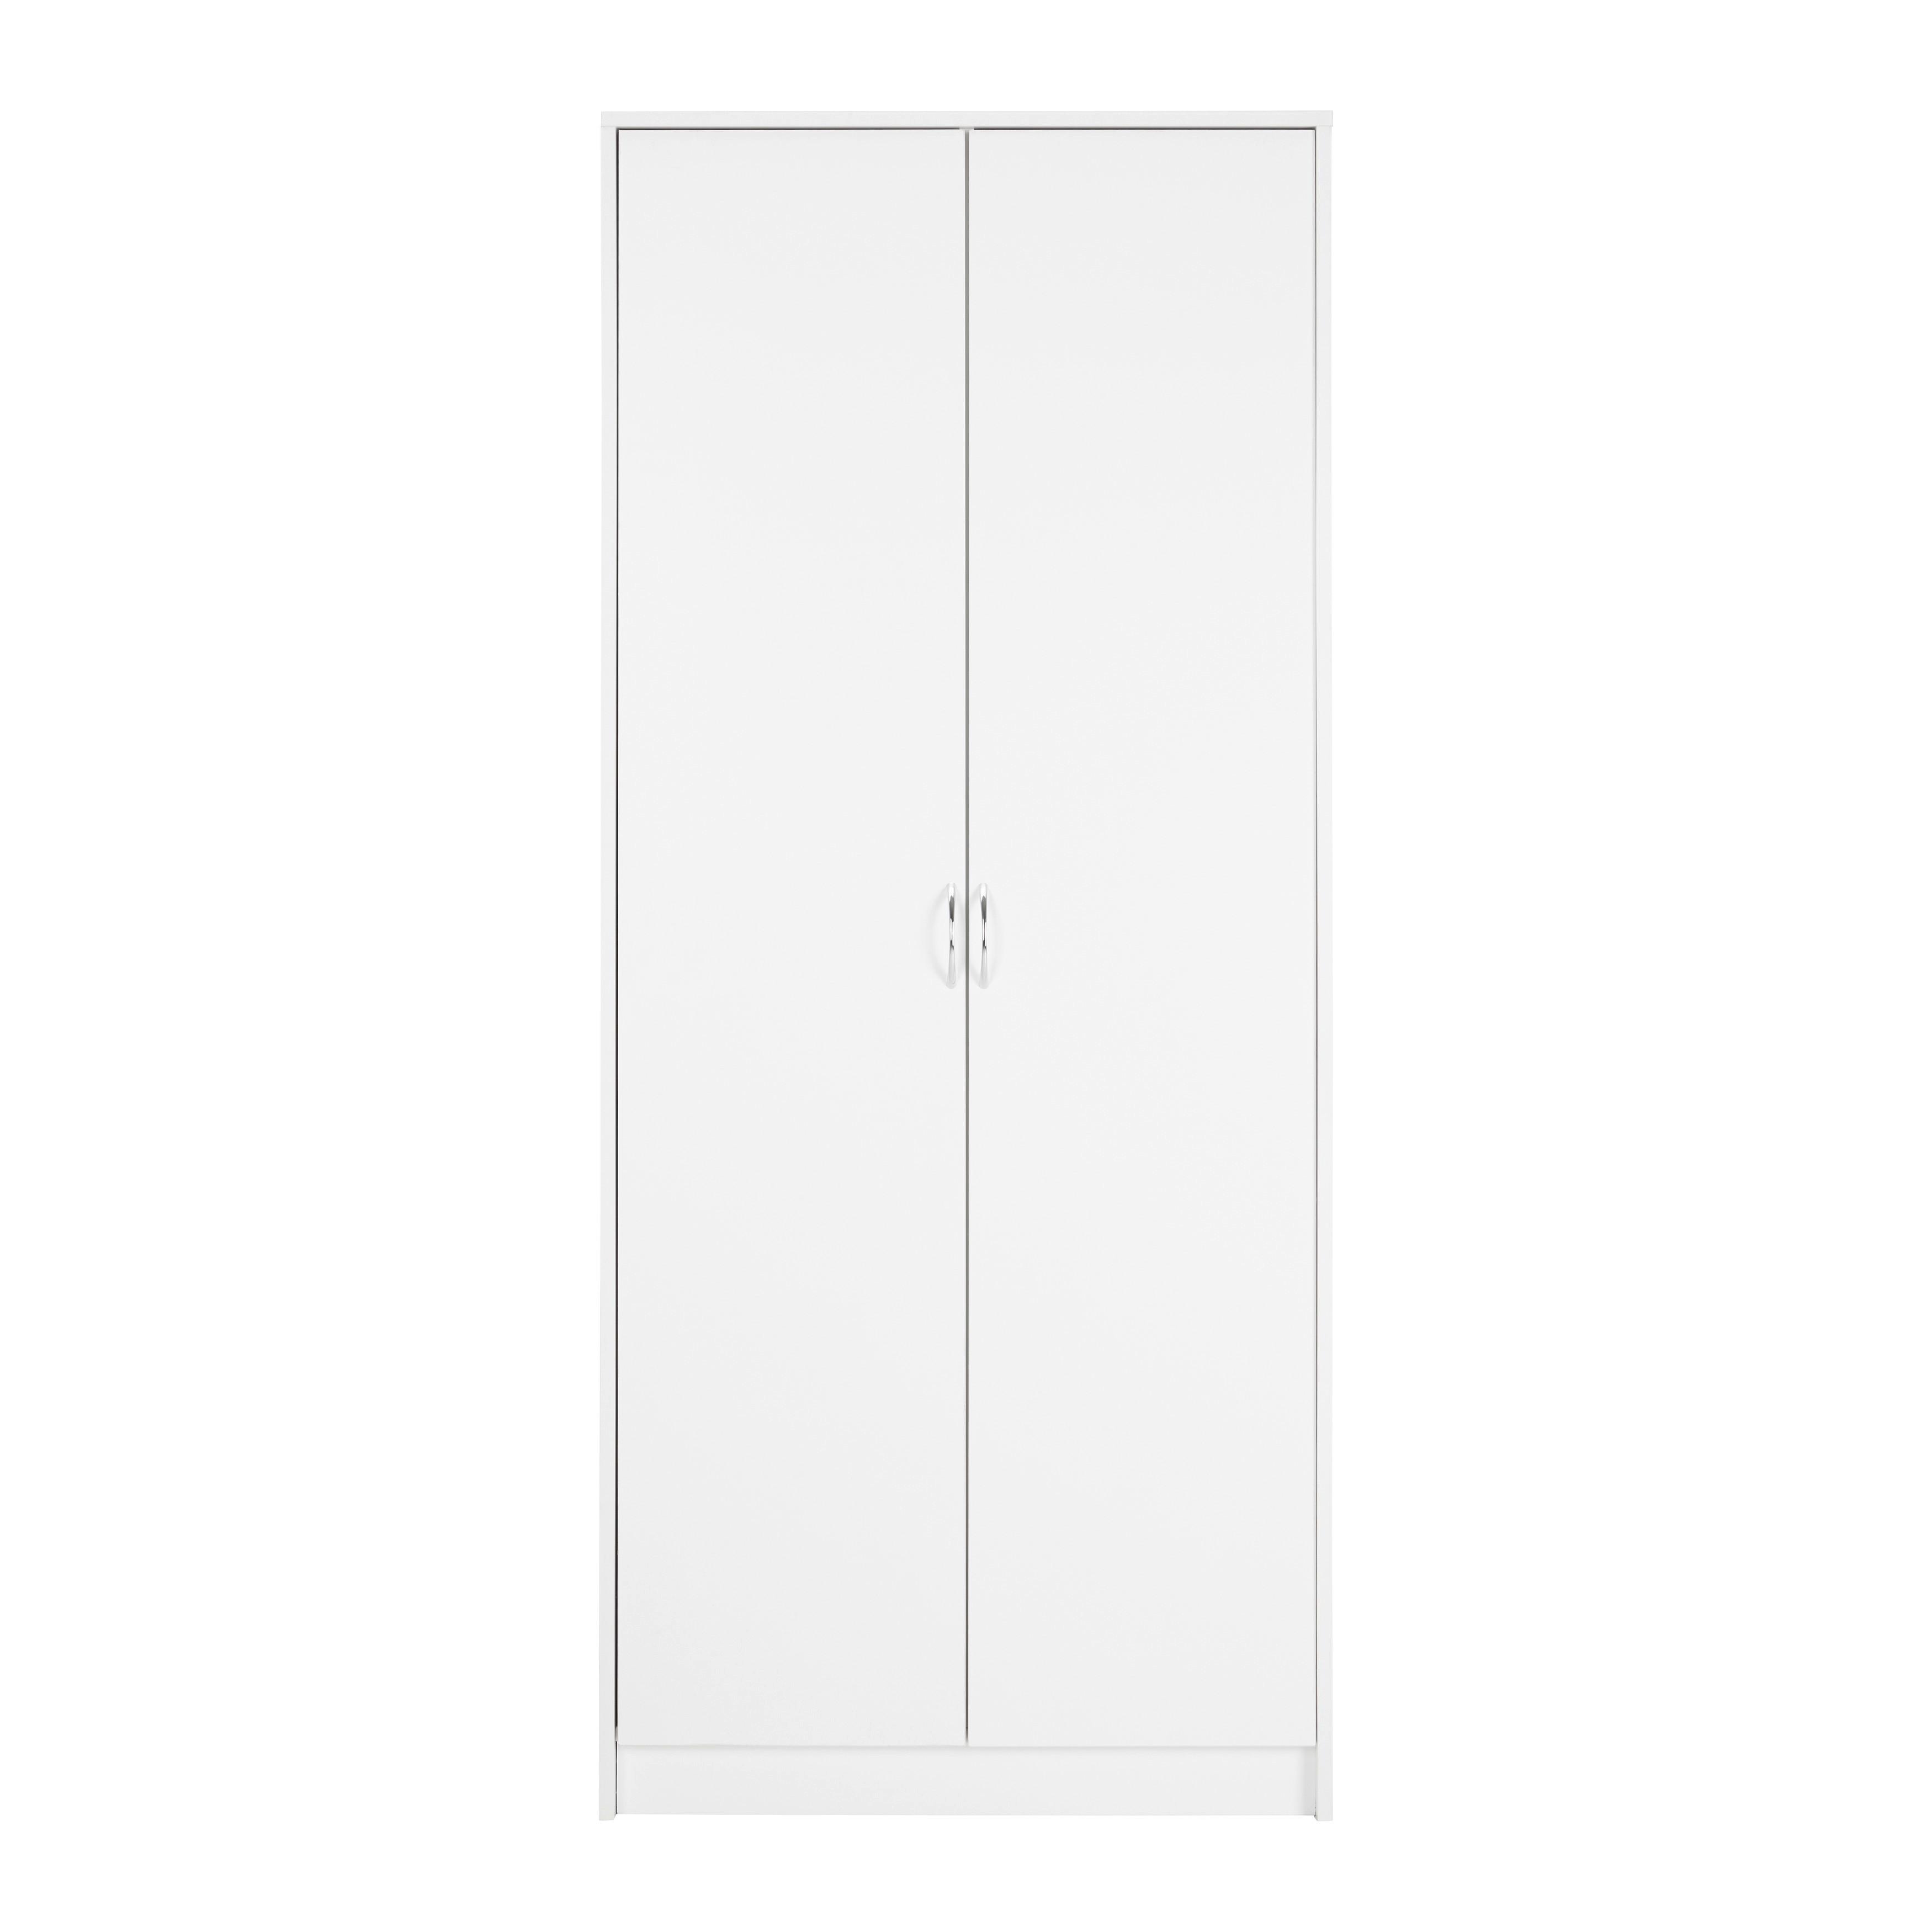 Kleiderschrank "Nika", weiß - Silberfarben/Weiß, MODERN, Holzwerkstoff/Kunststoff (75/175/50cm) - Bessagi Home